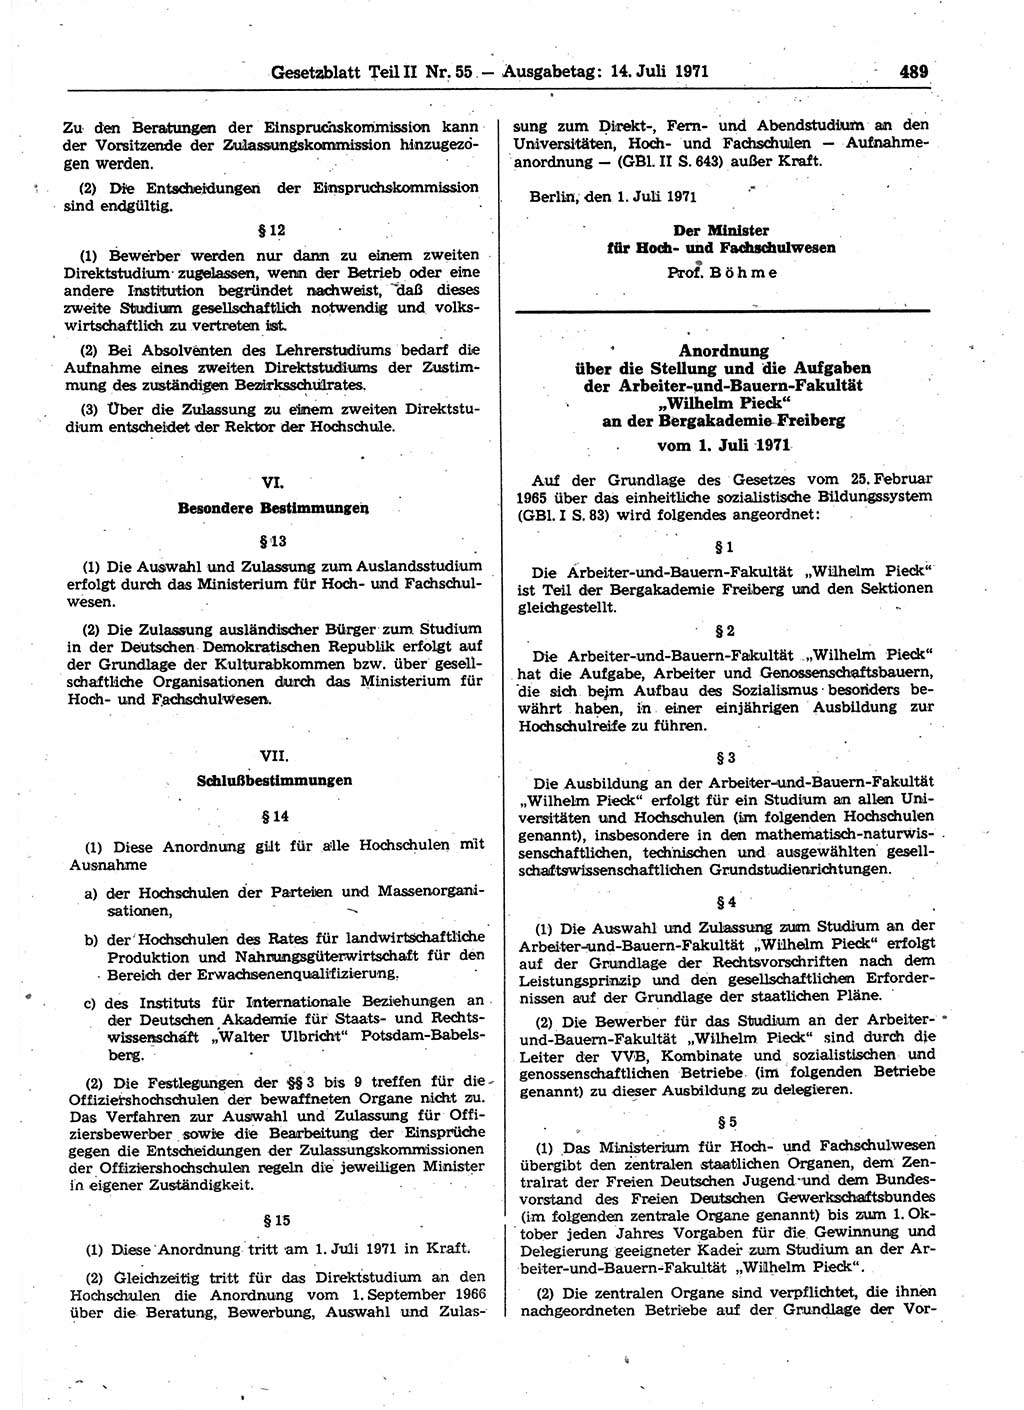 Gesetzblatt (GBl.) der Deutschen Demokratischen Republik (DDR) Teil ⅠⅠ 1971, Seite 489 (GBl. DDR ⅠⅠ 1971, S. 489)